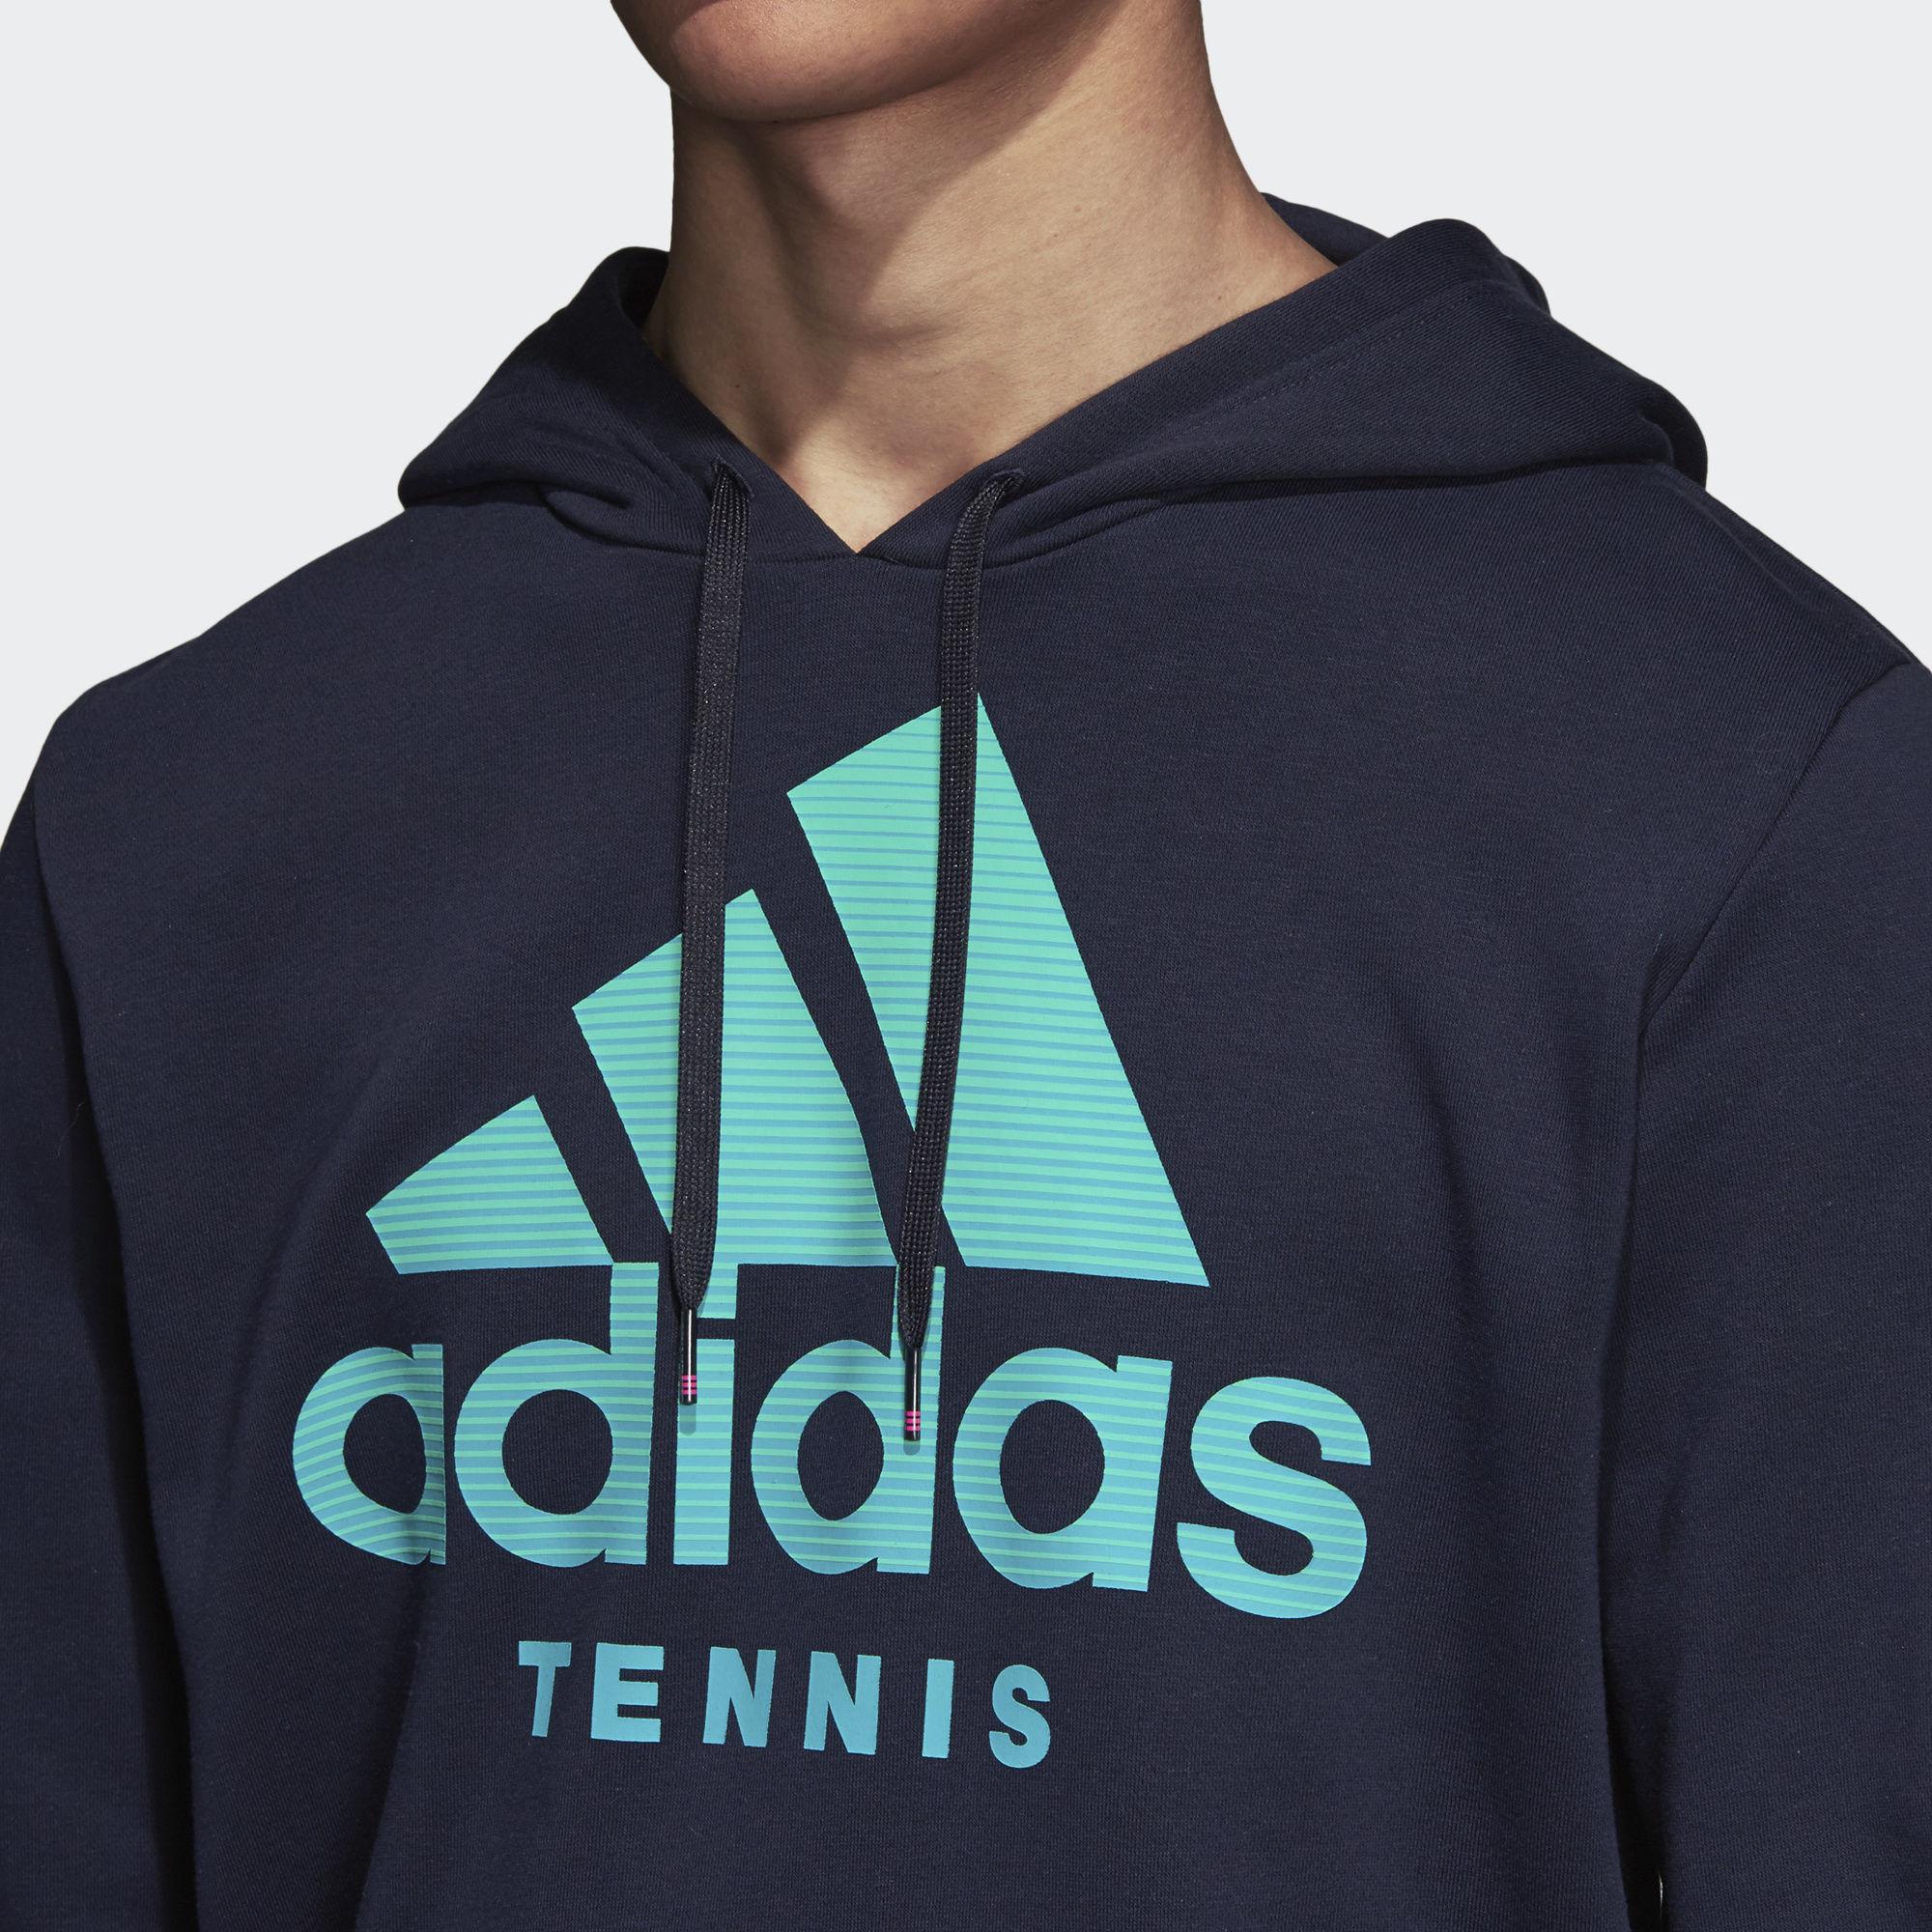 adidas tennis sweatshirt